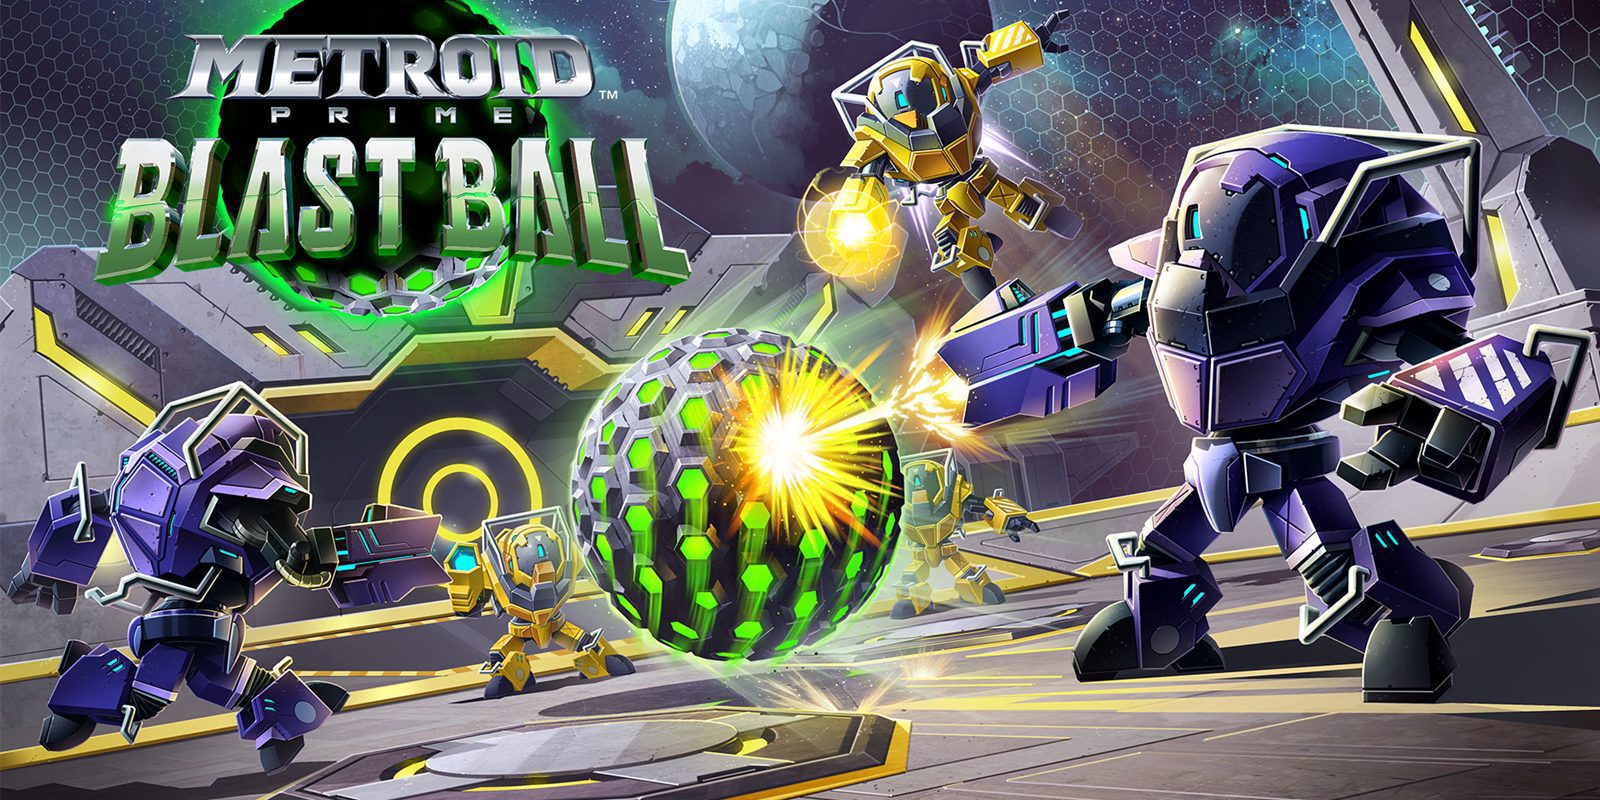 'Metroid Prime: Blast Ball', completamente gratis en la eShop de Nintendo 3DS